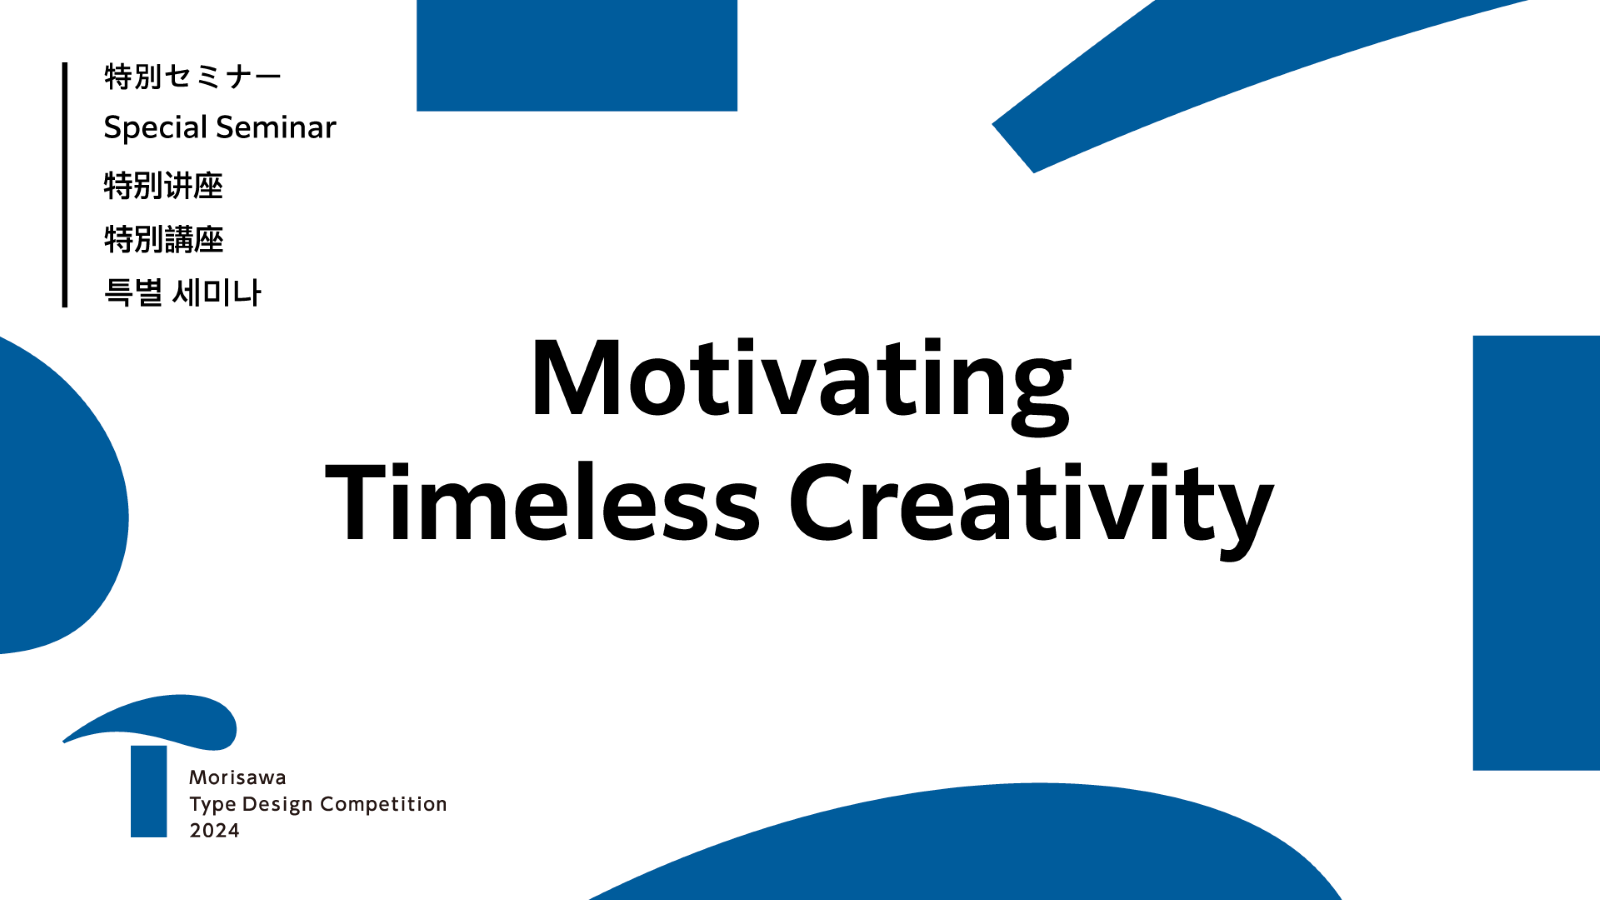 온라인 특별세미나 「Motivating Timeless Creativity」를 오늘부터 공개